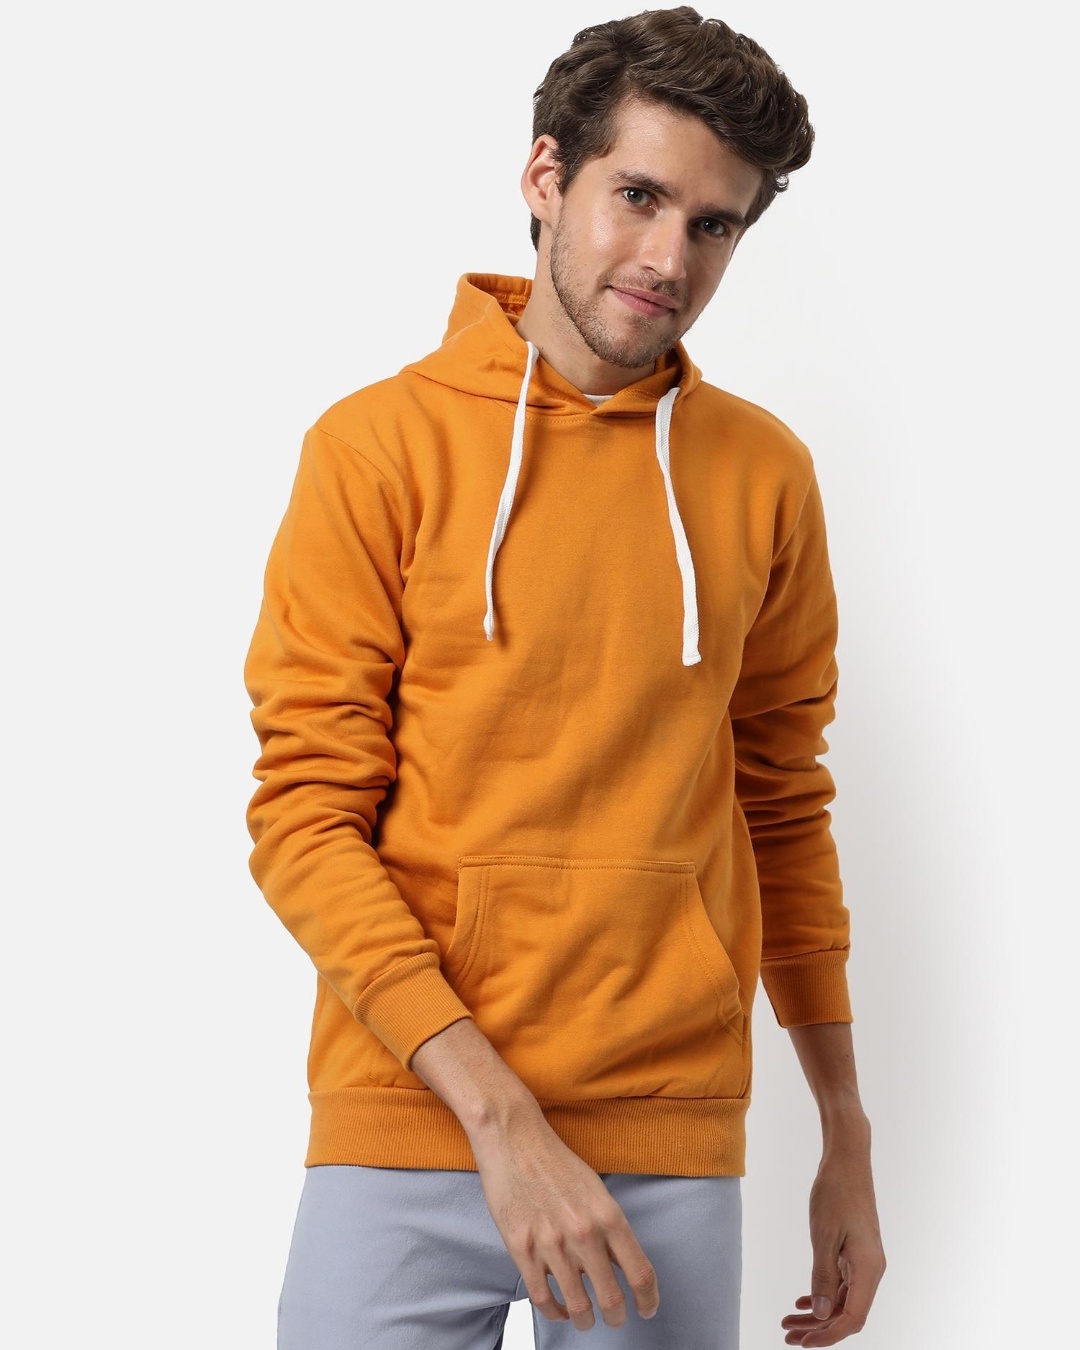 Buy Men's Yellow Hooded Sweatshirt Online at Bewakoof